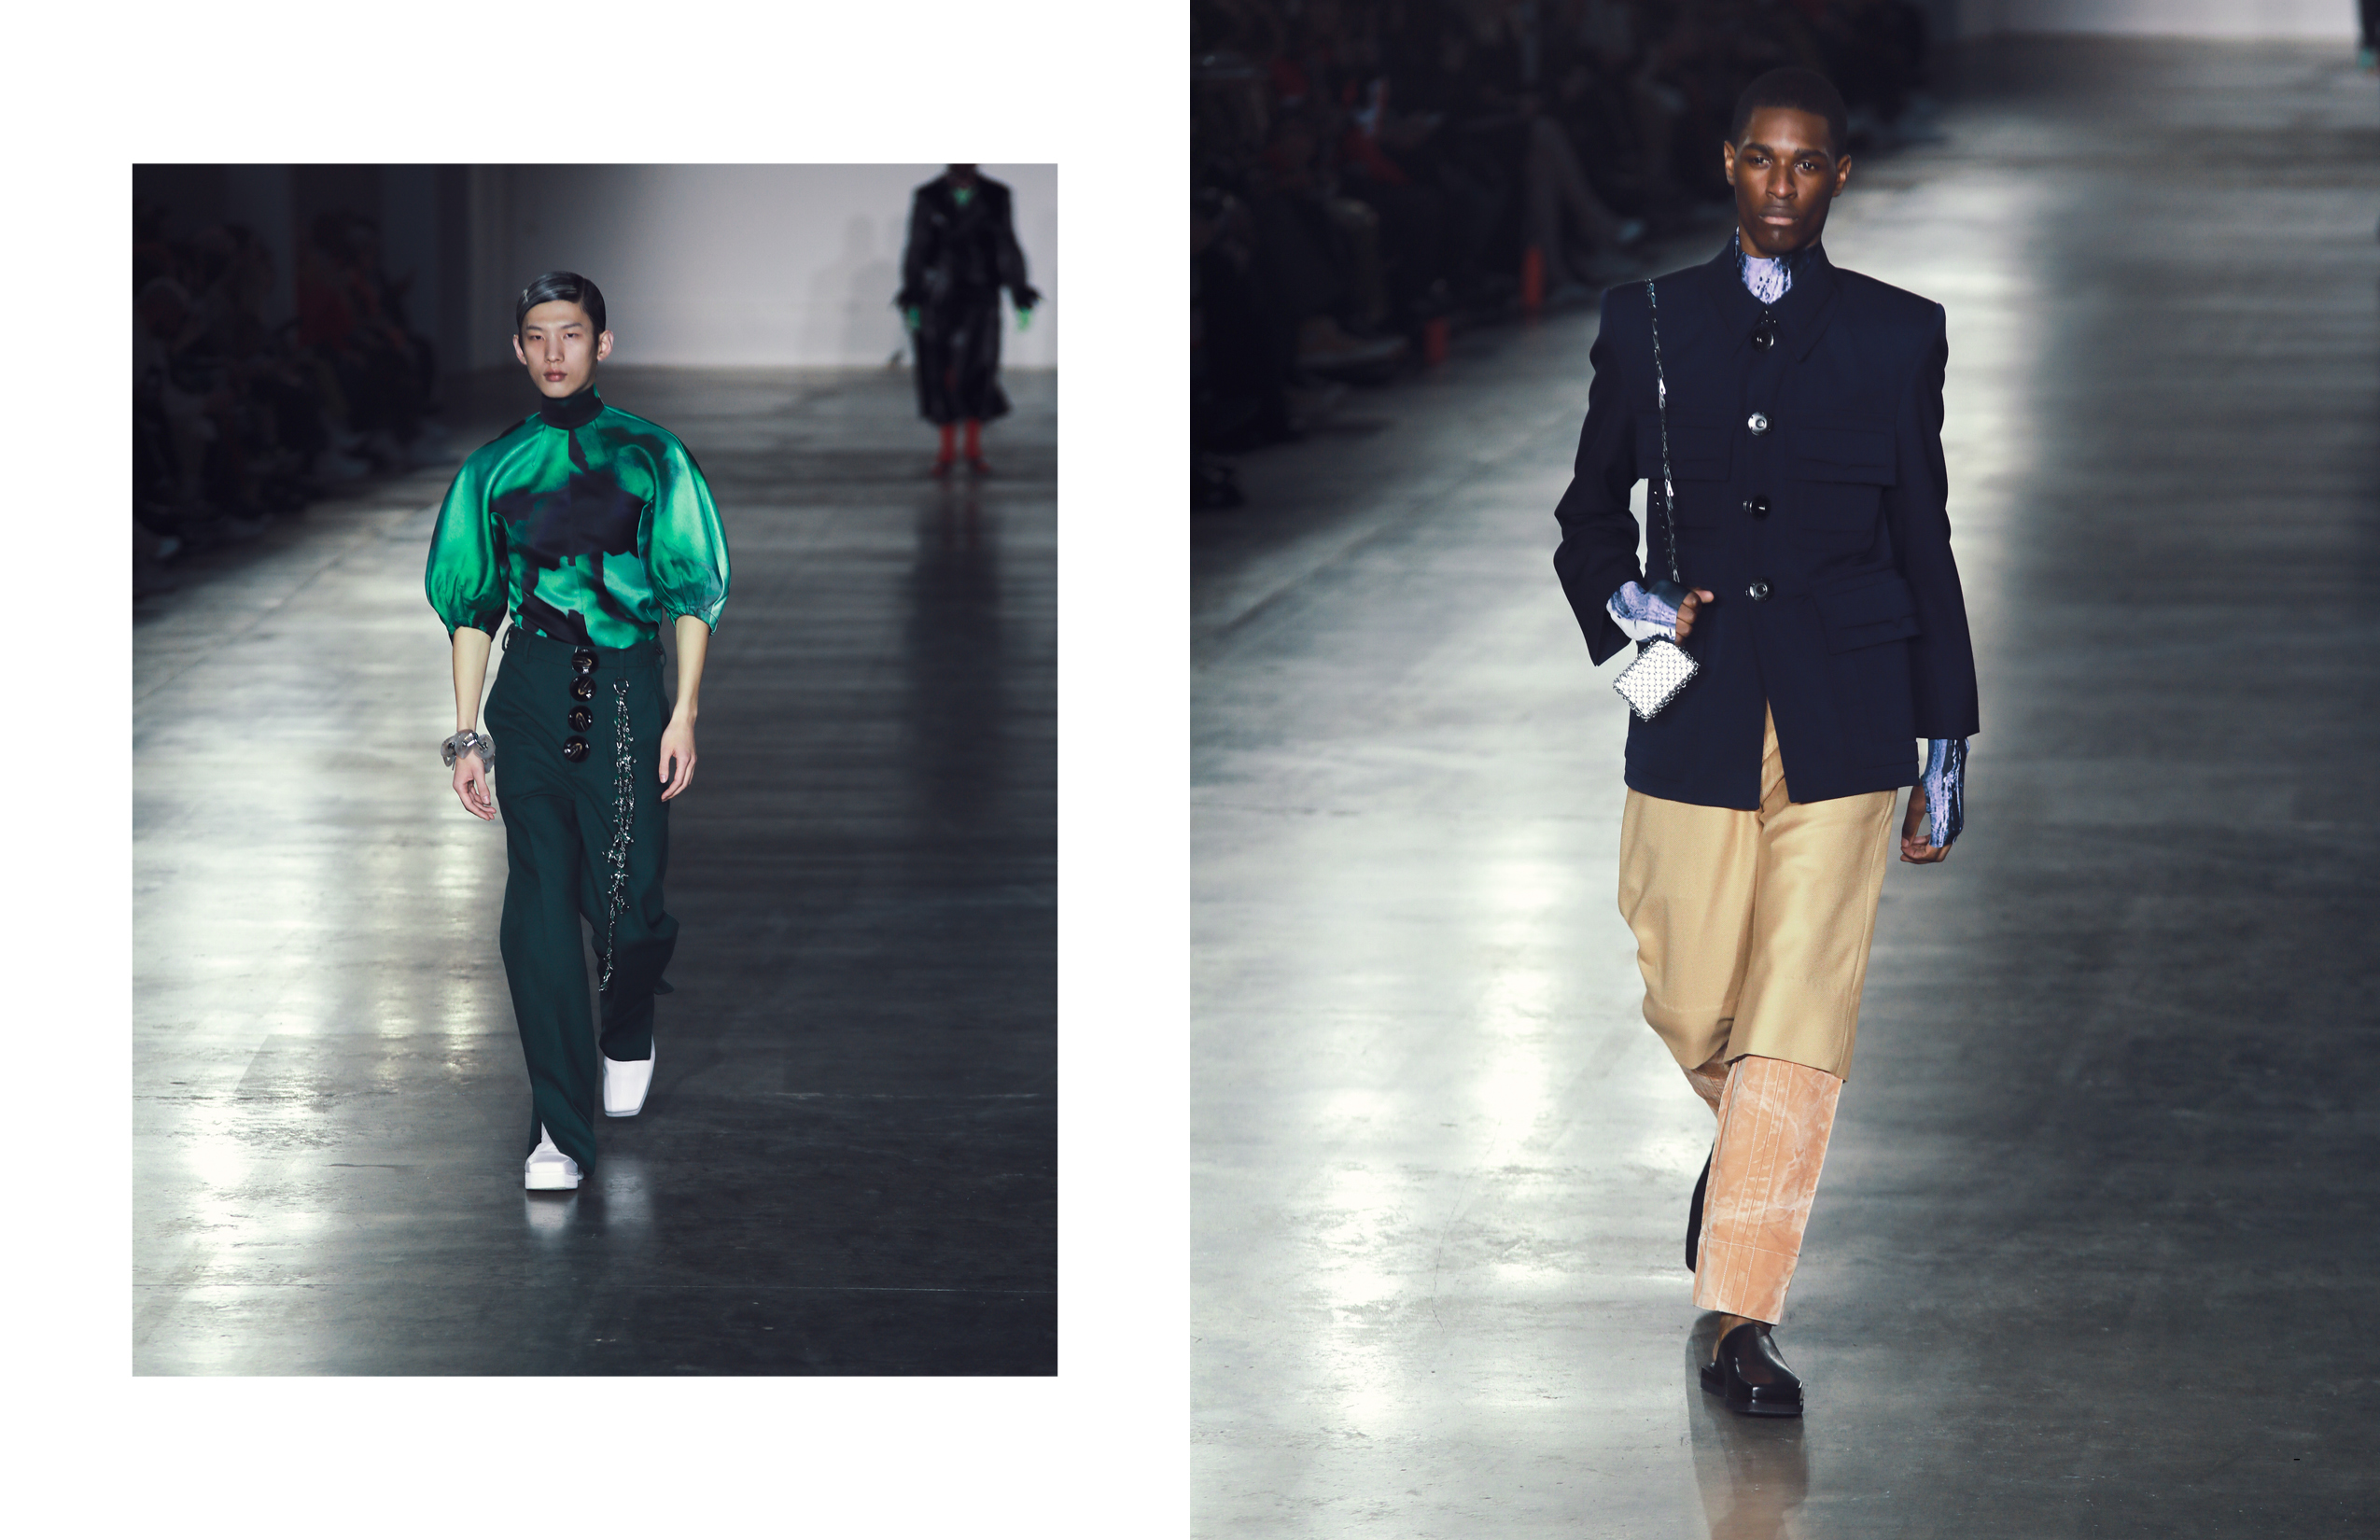 future now | london fashion week men’s aw20 – Schön! Magazine